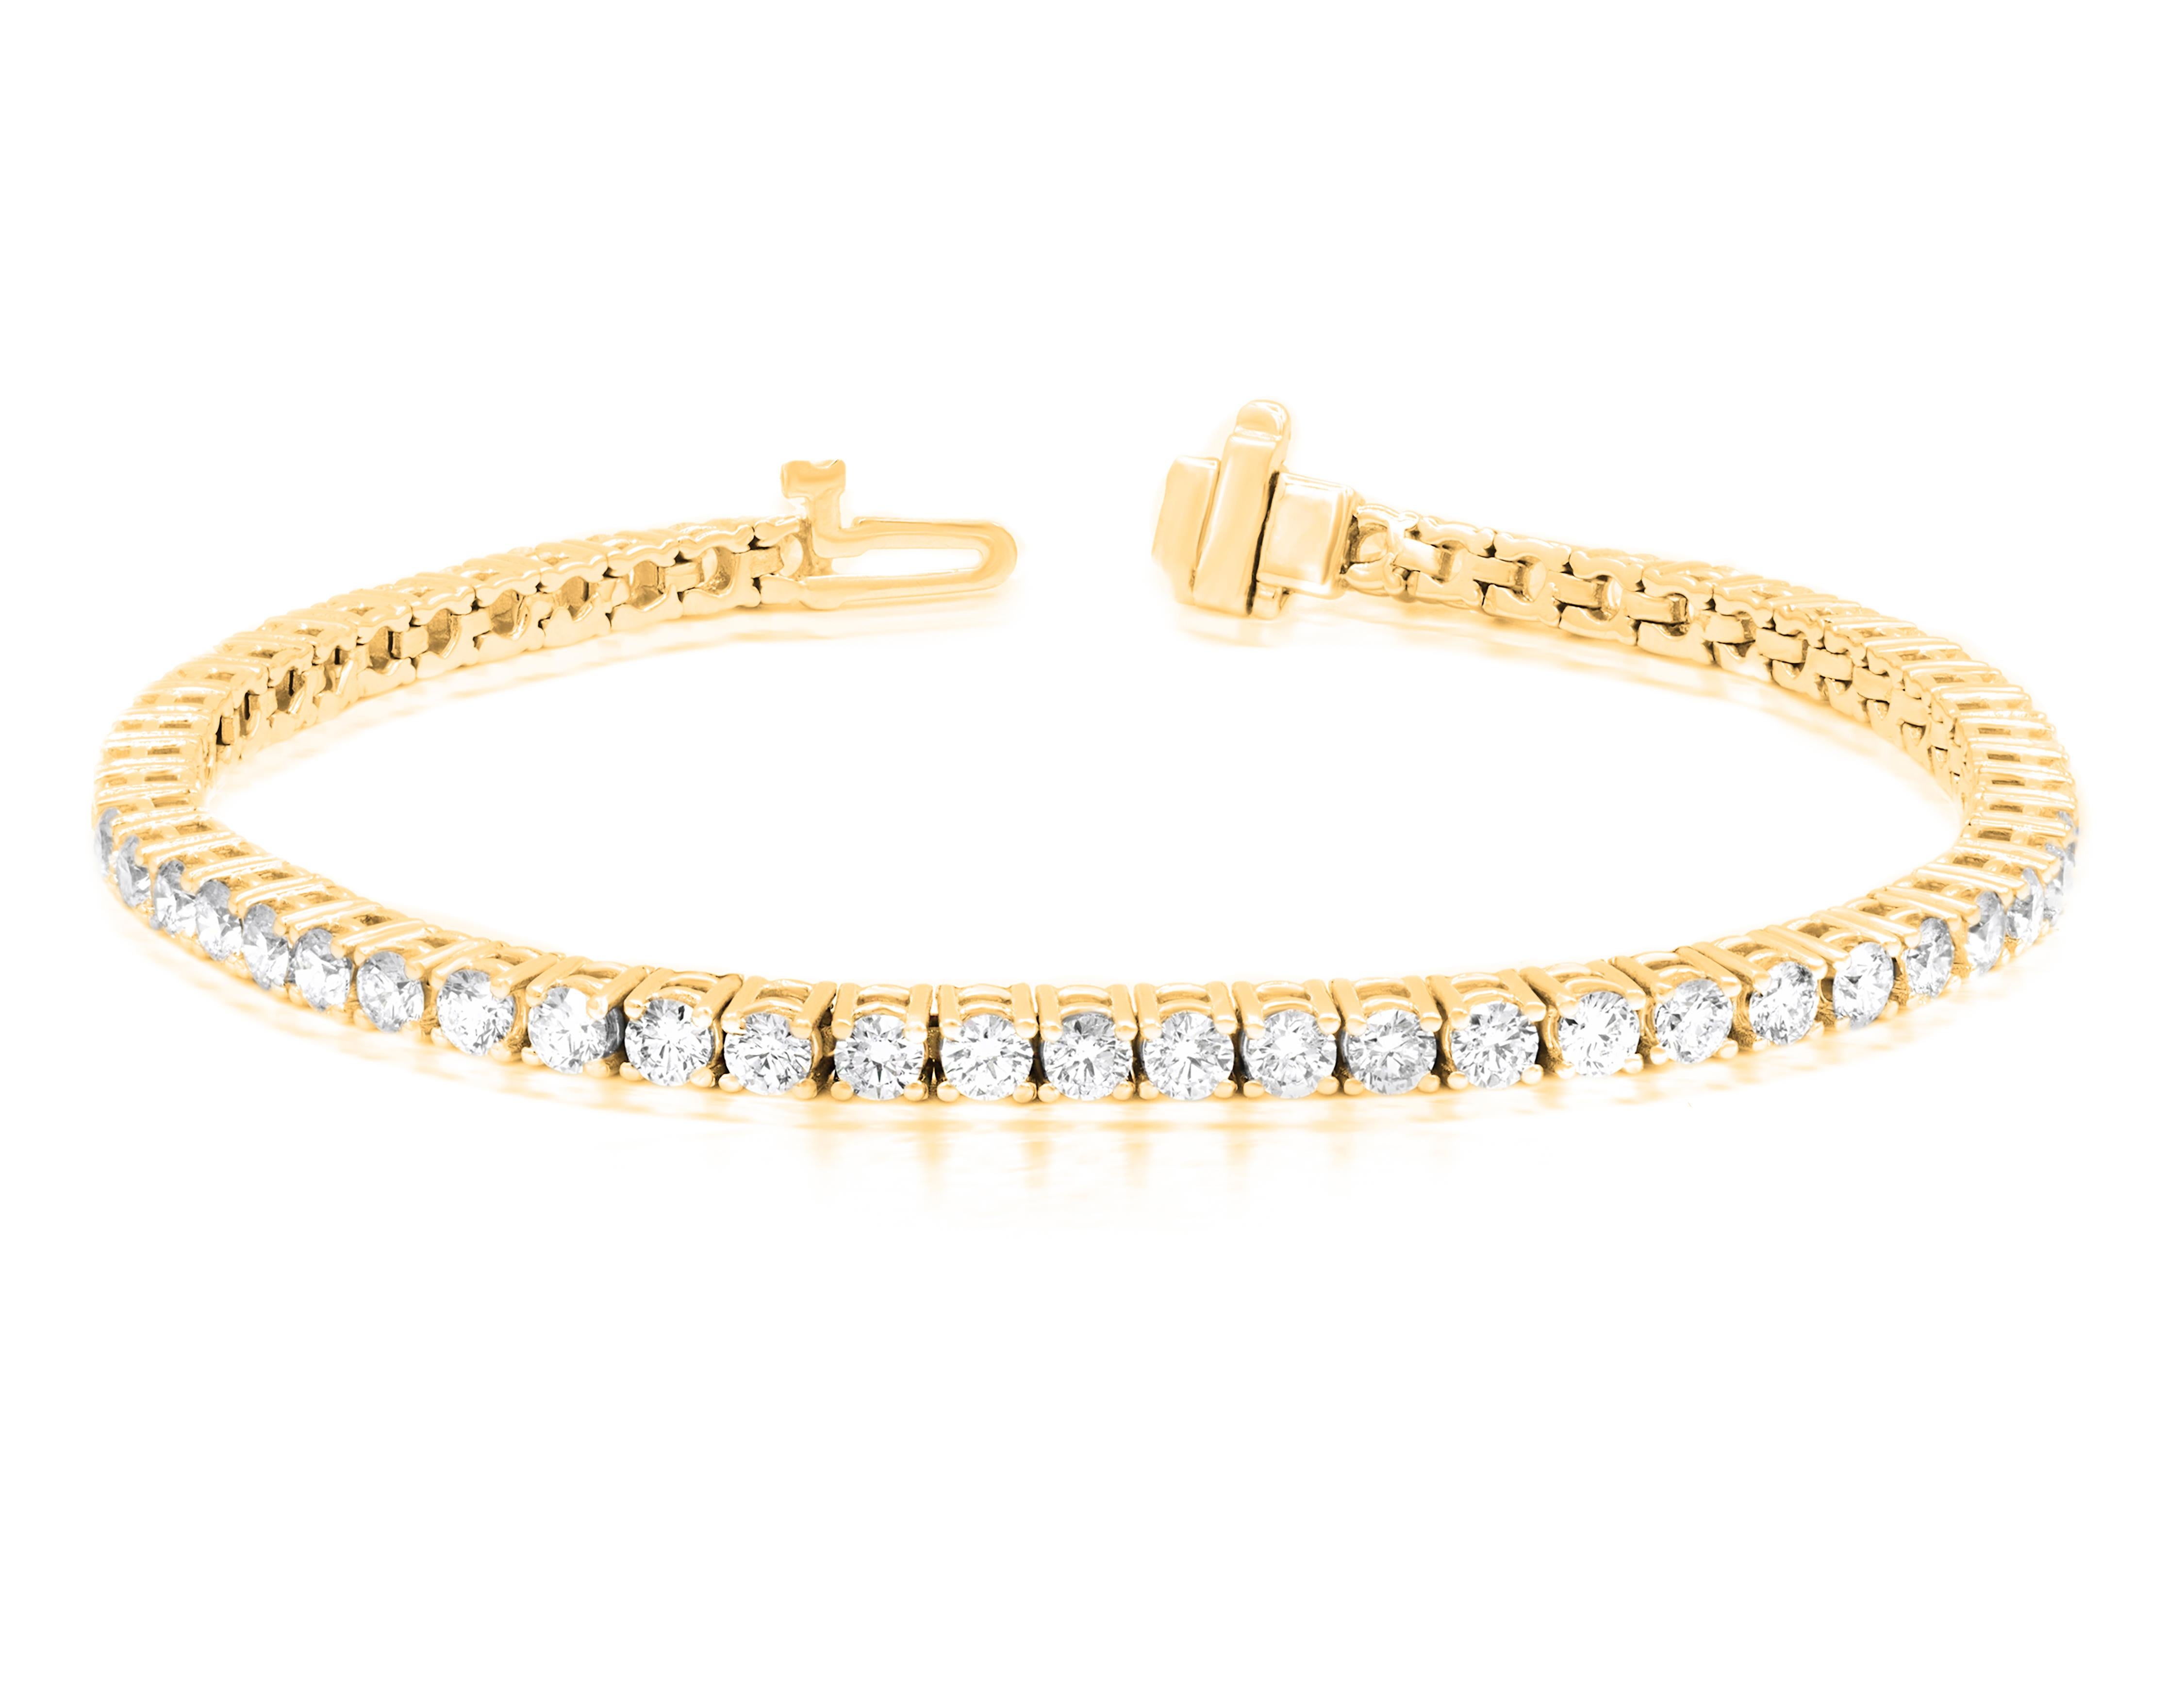 Bracelet de tennis en or jaune 14kt avec 4.00 cts tw de diamants ronds dans une monture à 4 pinces GH SI.
A&M est un fournisseur de premier plan de bijoux fins de qualité supérieure depuis plus de 35 ans.
Diana M-One est un magasin unique pour tous